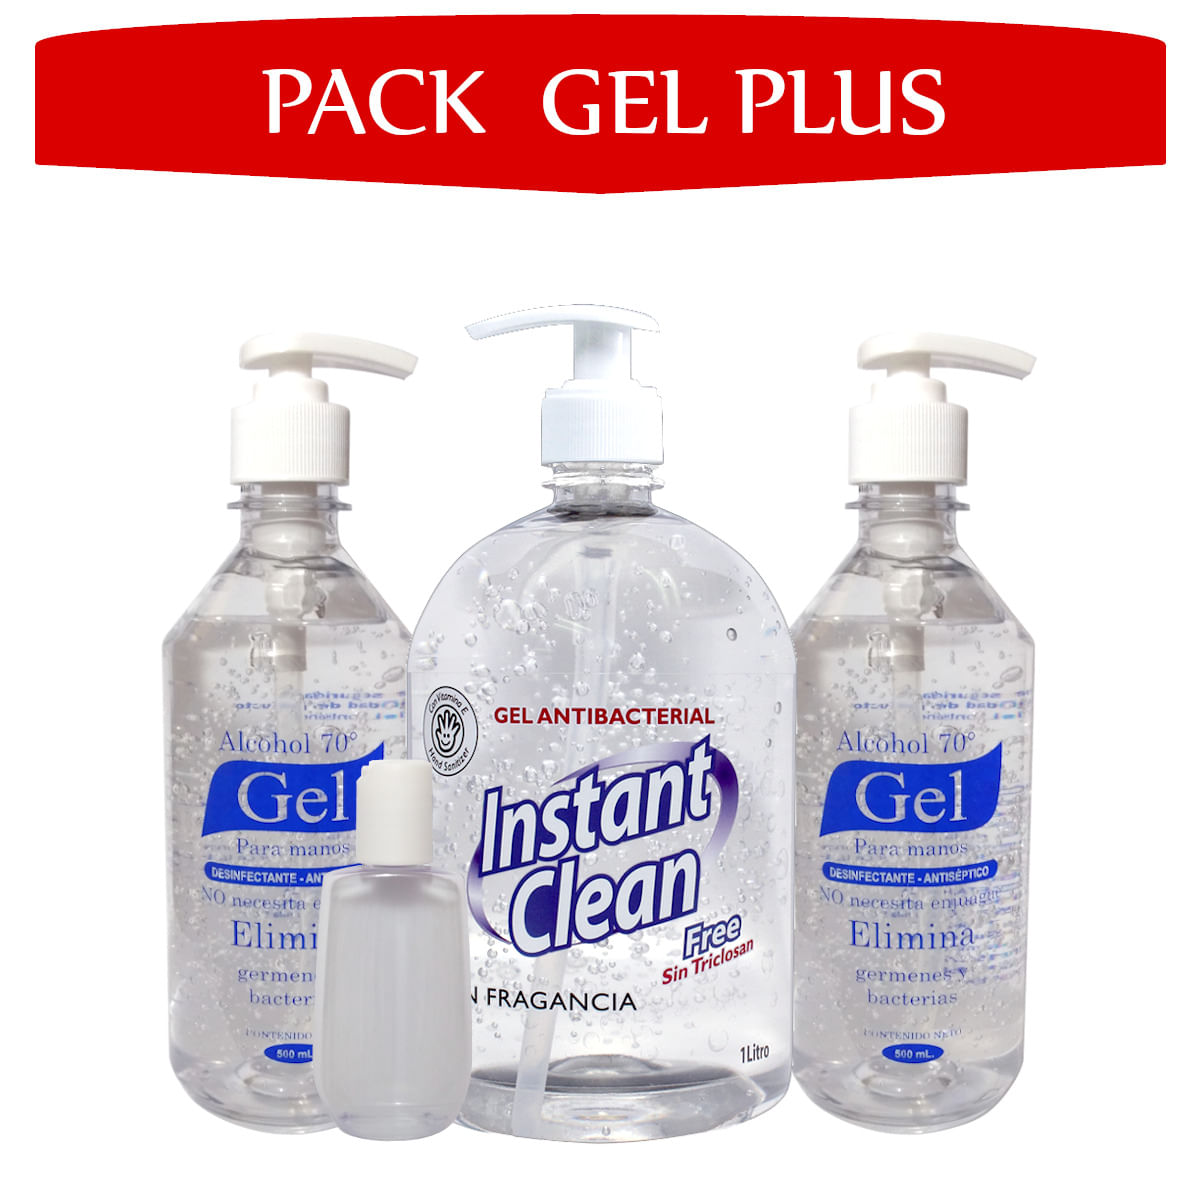 Pack Gel Plus: Alcohol en Gel Instant Clean+Alkofarma